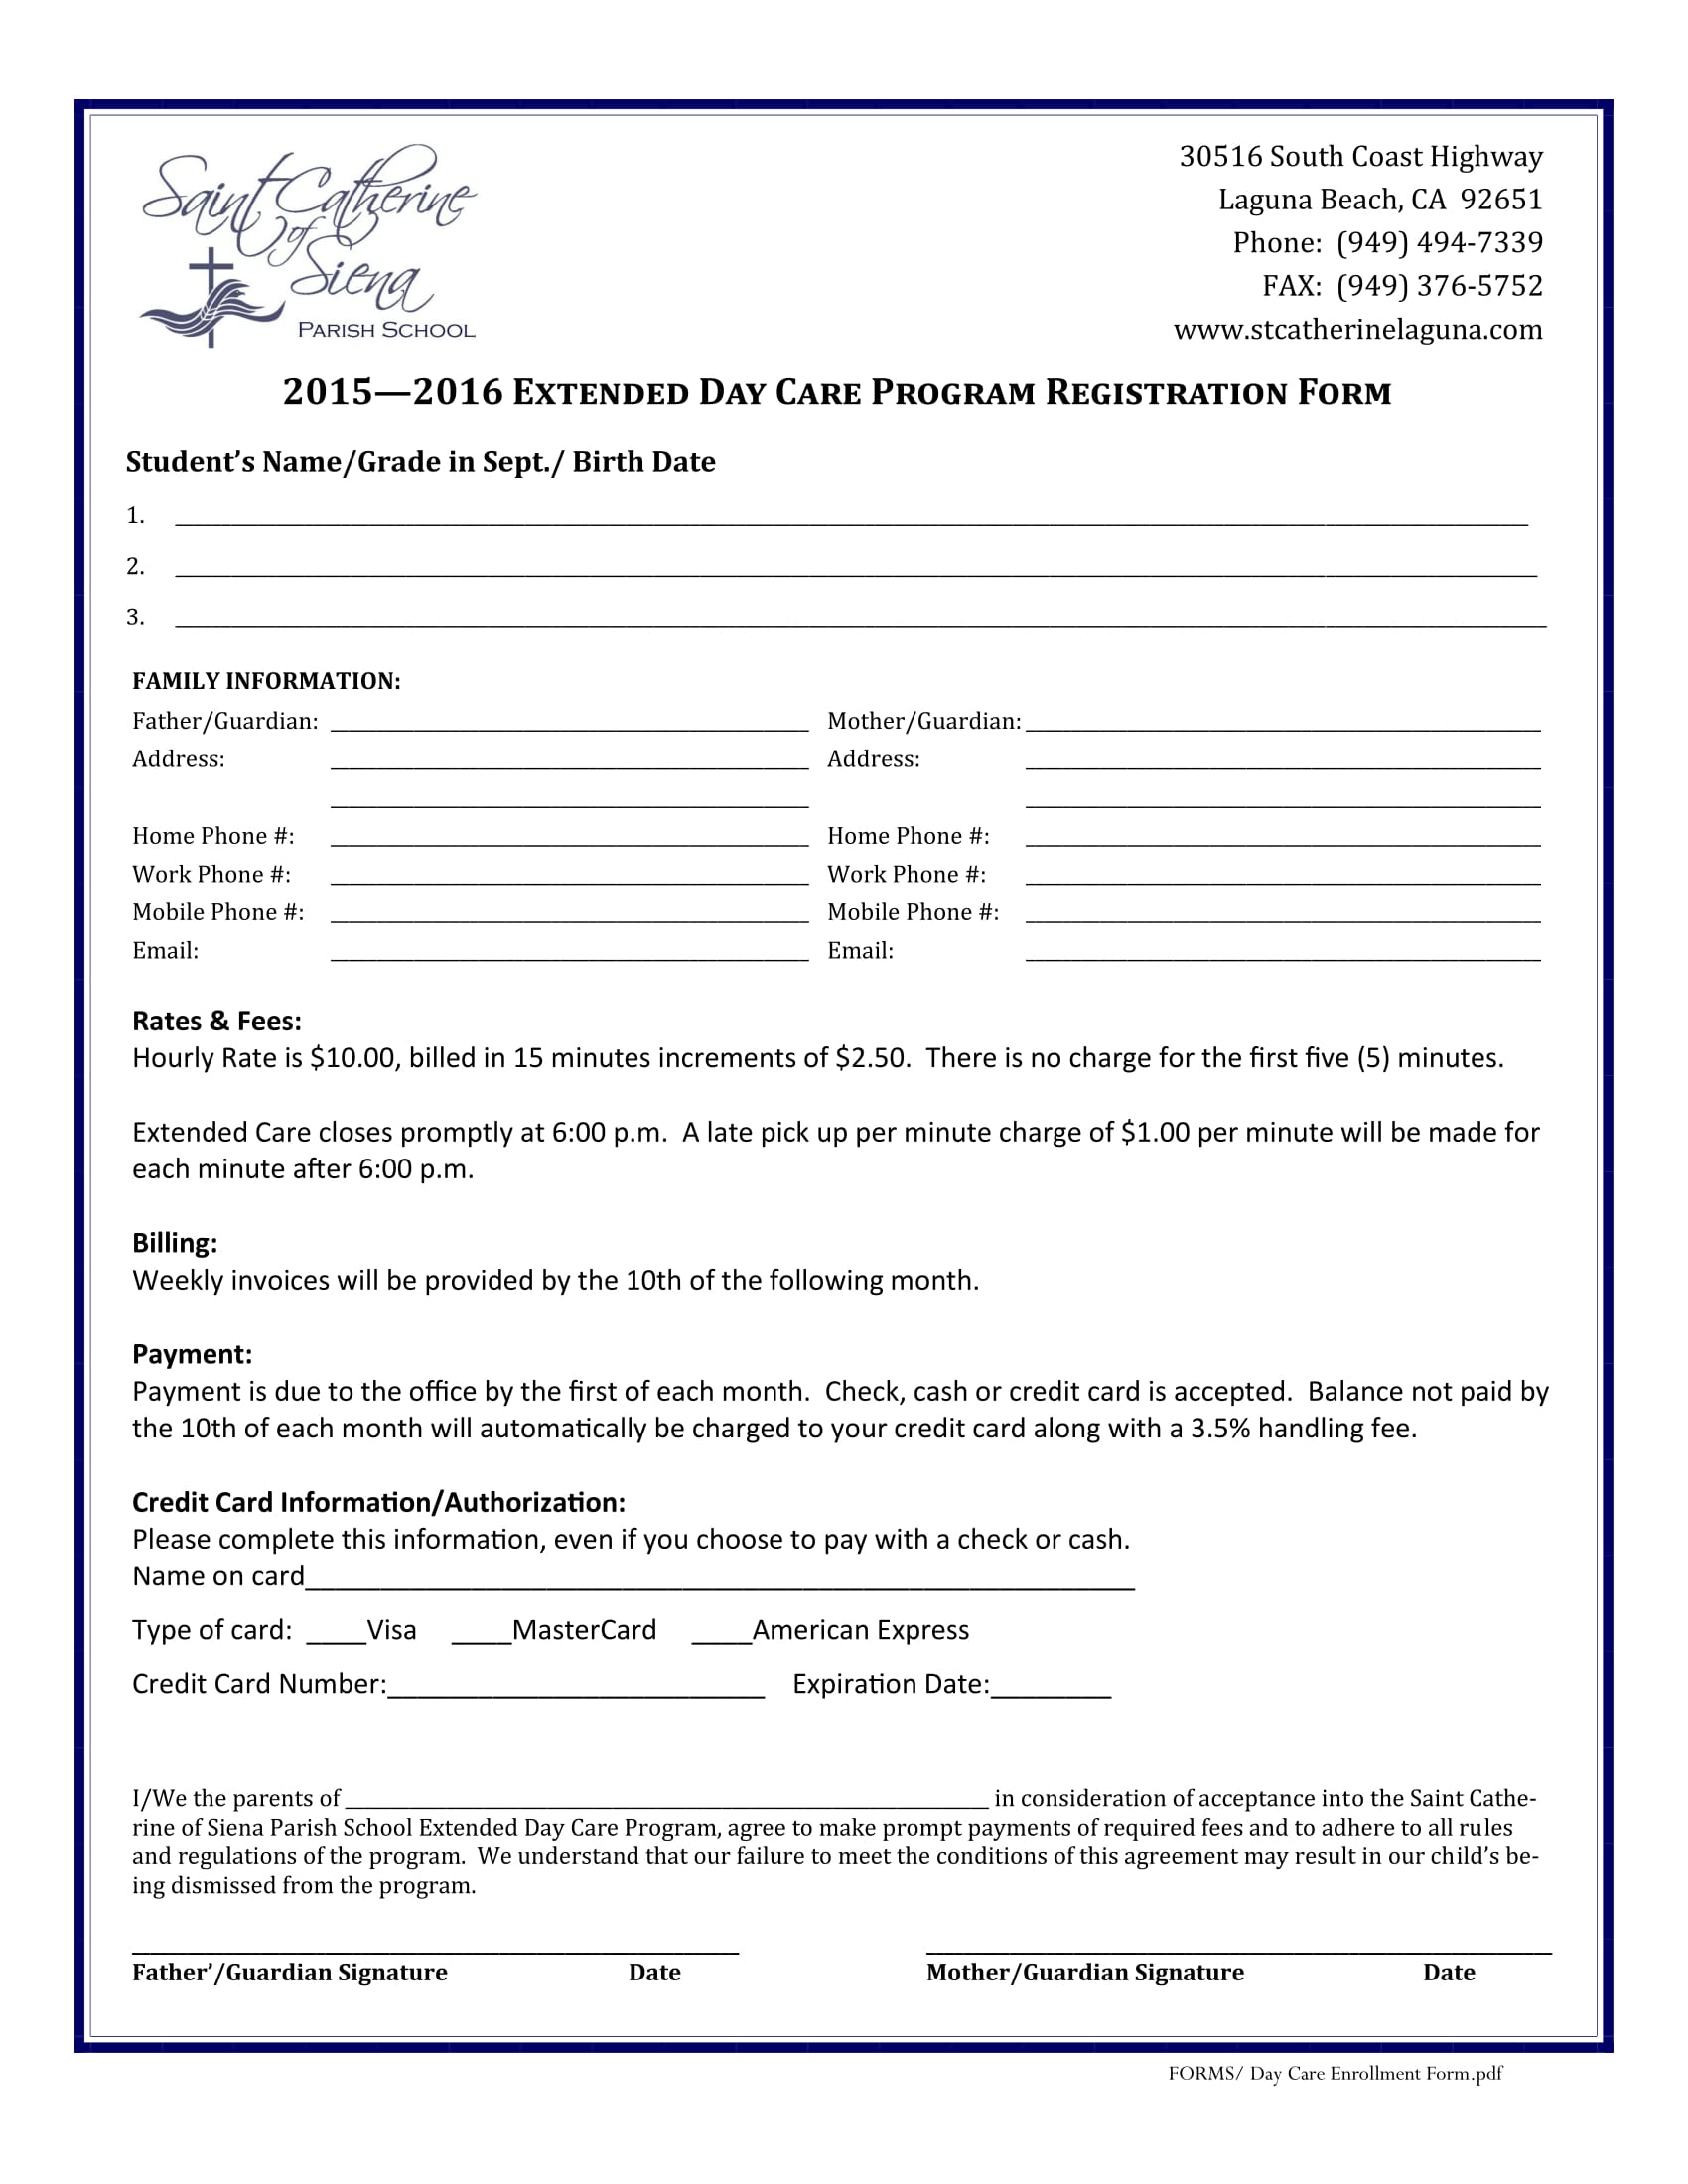 extended daycare registration form 1